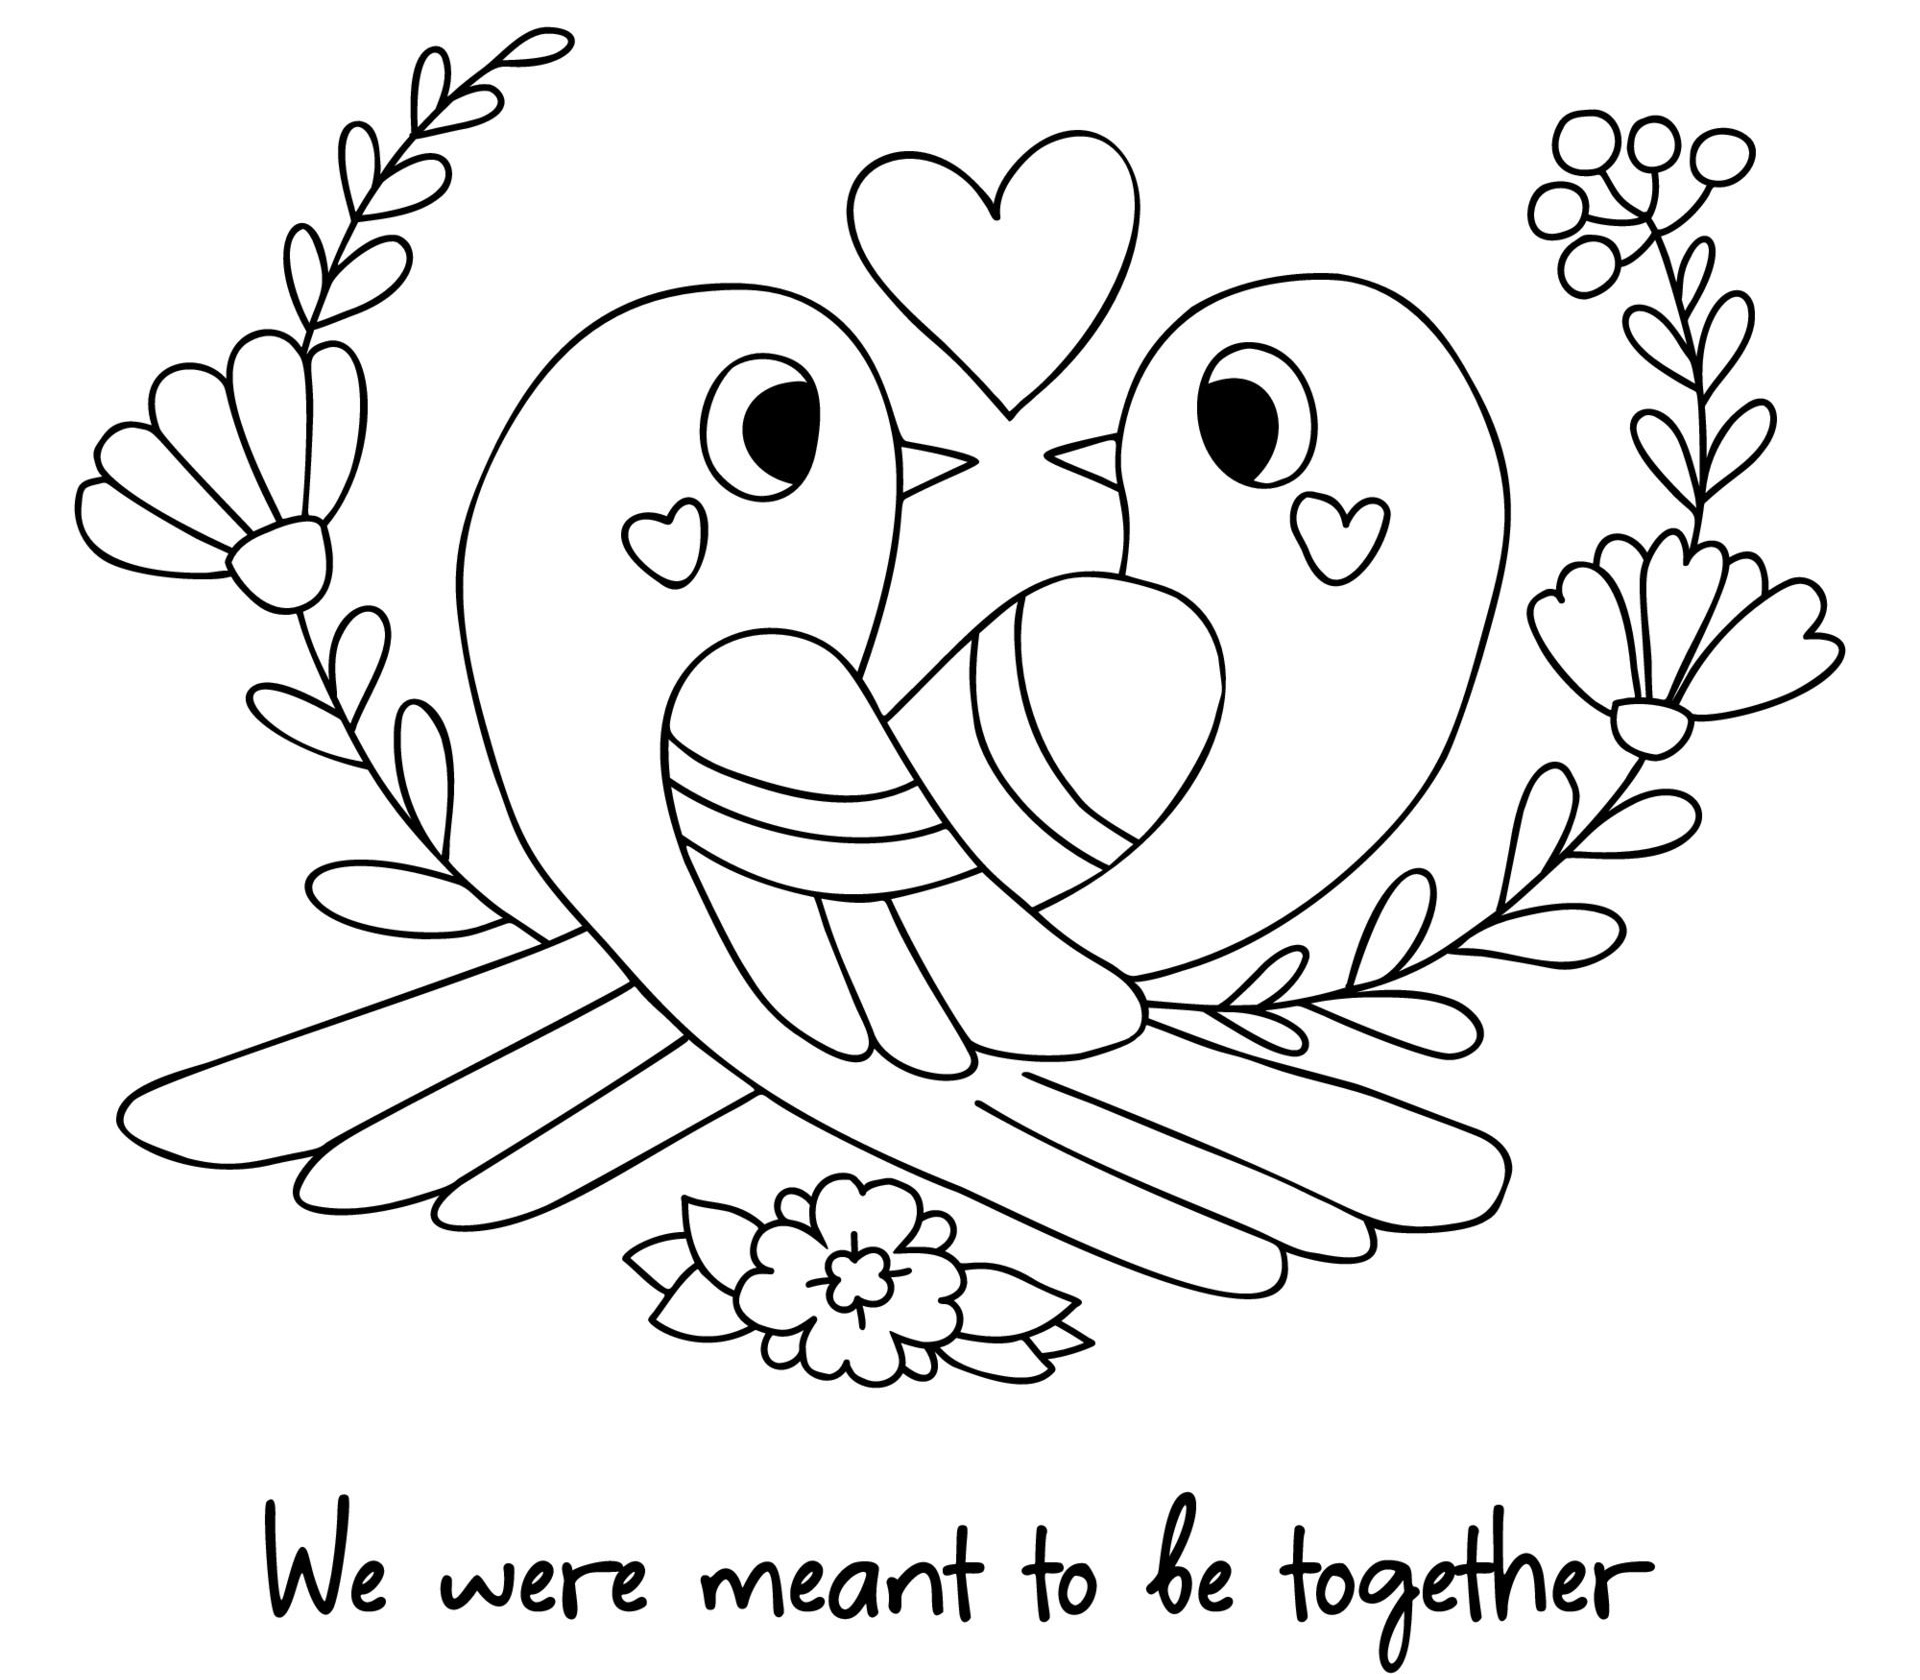 طرح خام گلدوزی دو پرنده و یک قلب